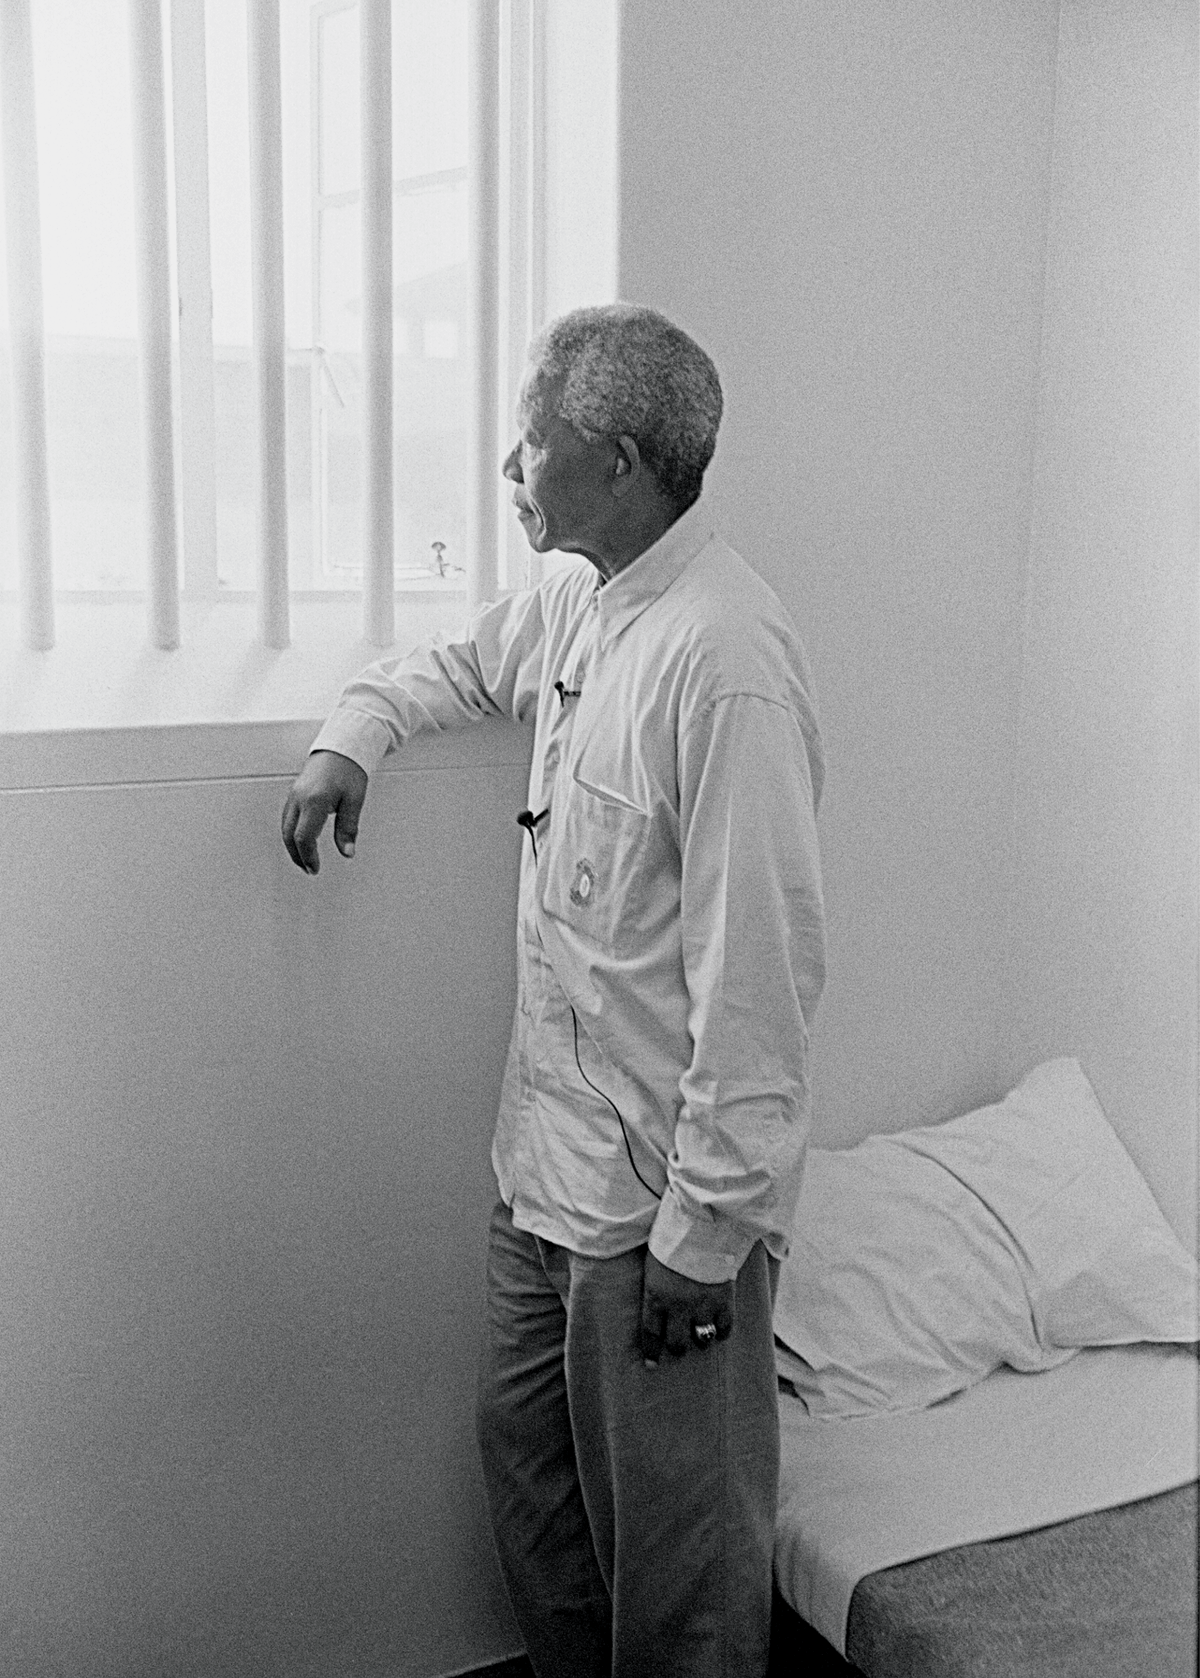 Nelson Mandela a passé 27 ans dans les prisons de l'Afrique du Sud pour s'être
opposé à la ségrégation raciale, photographie prise par Jürgen Schadeberg en 1994.